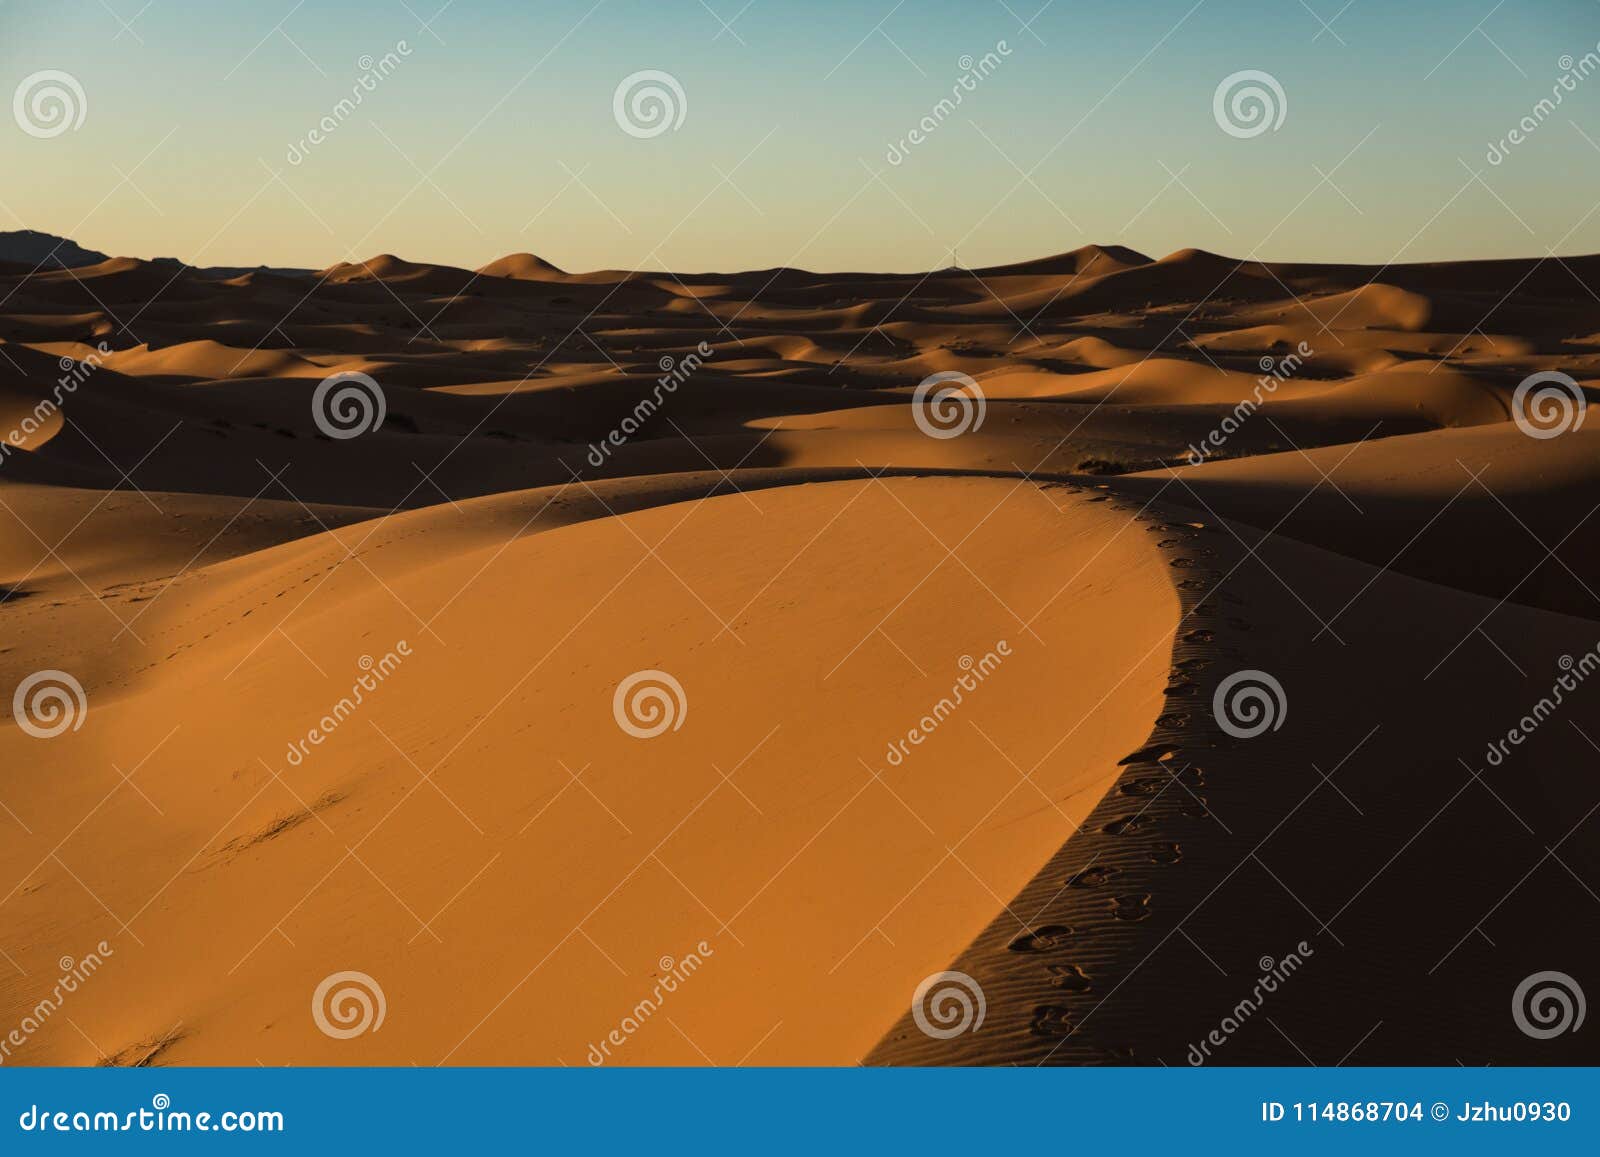 sahara desert sunset